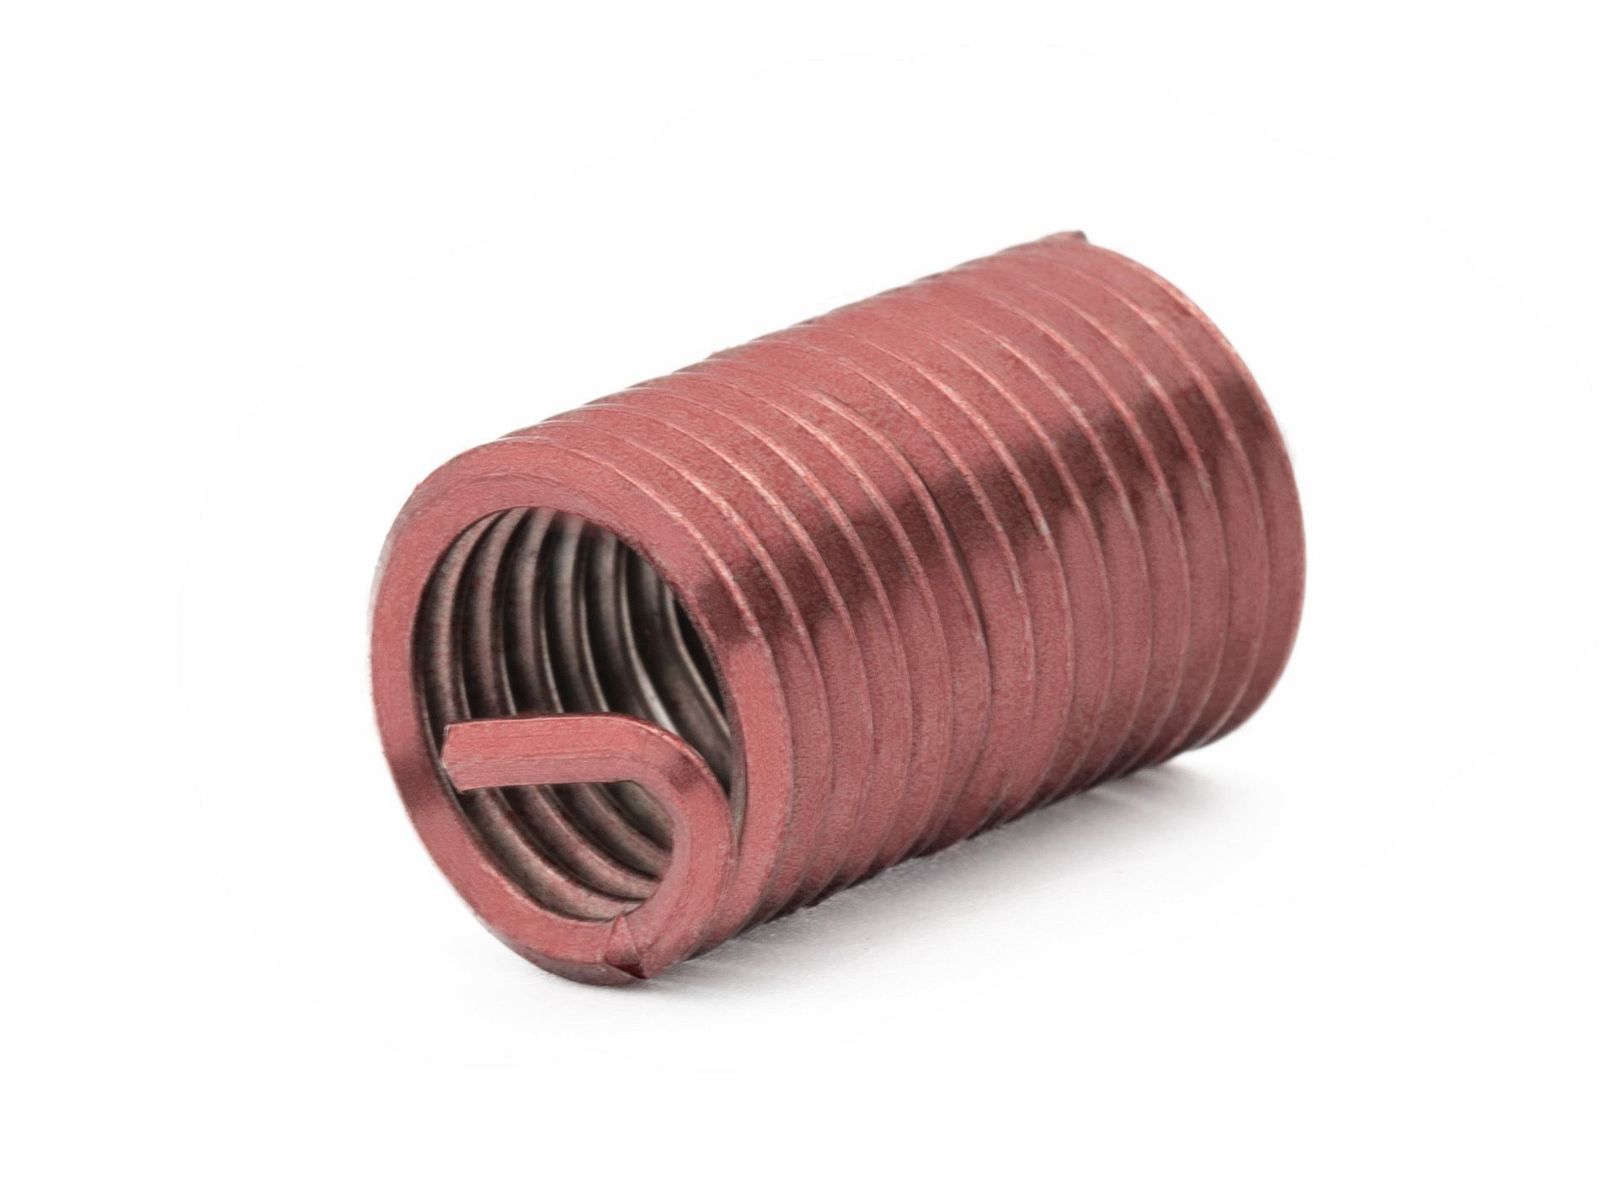 BaerCoil Wire Thread Inserts UNC No. 8 x 32 - 2.5 D (10.41 mm) - screw grip (screw locking) - 100 pcs.